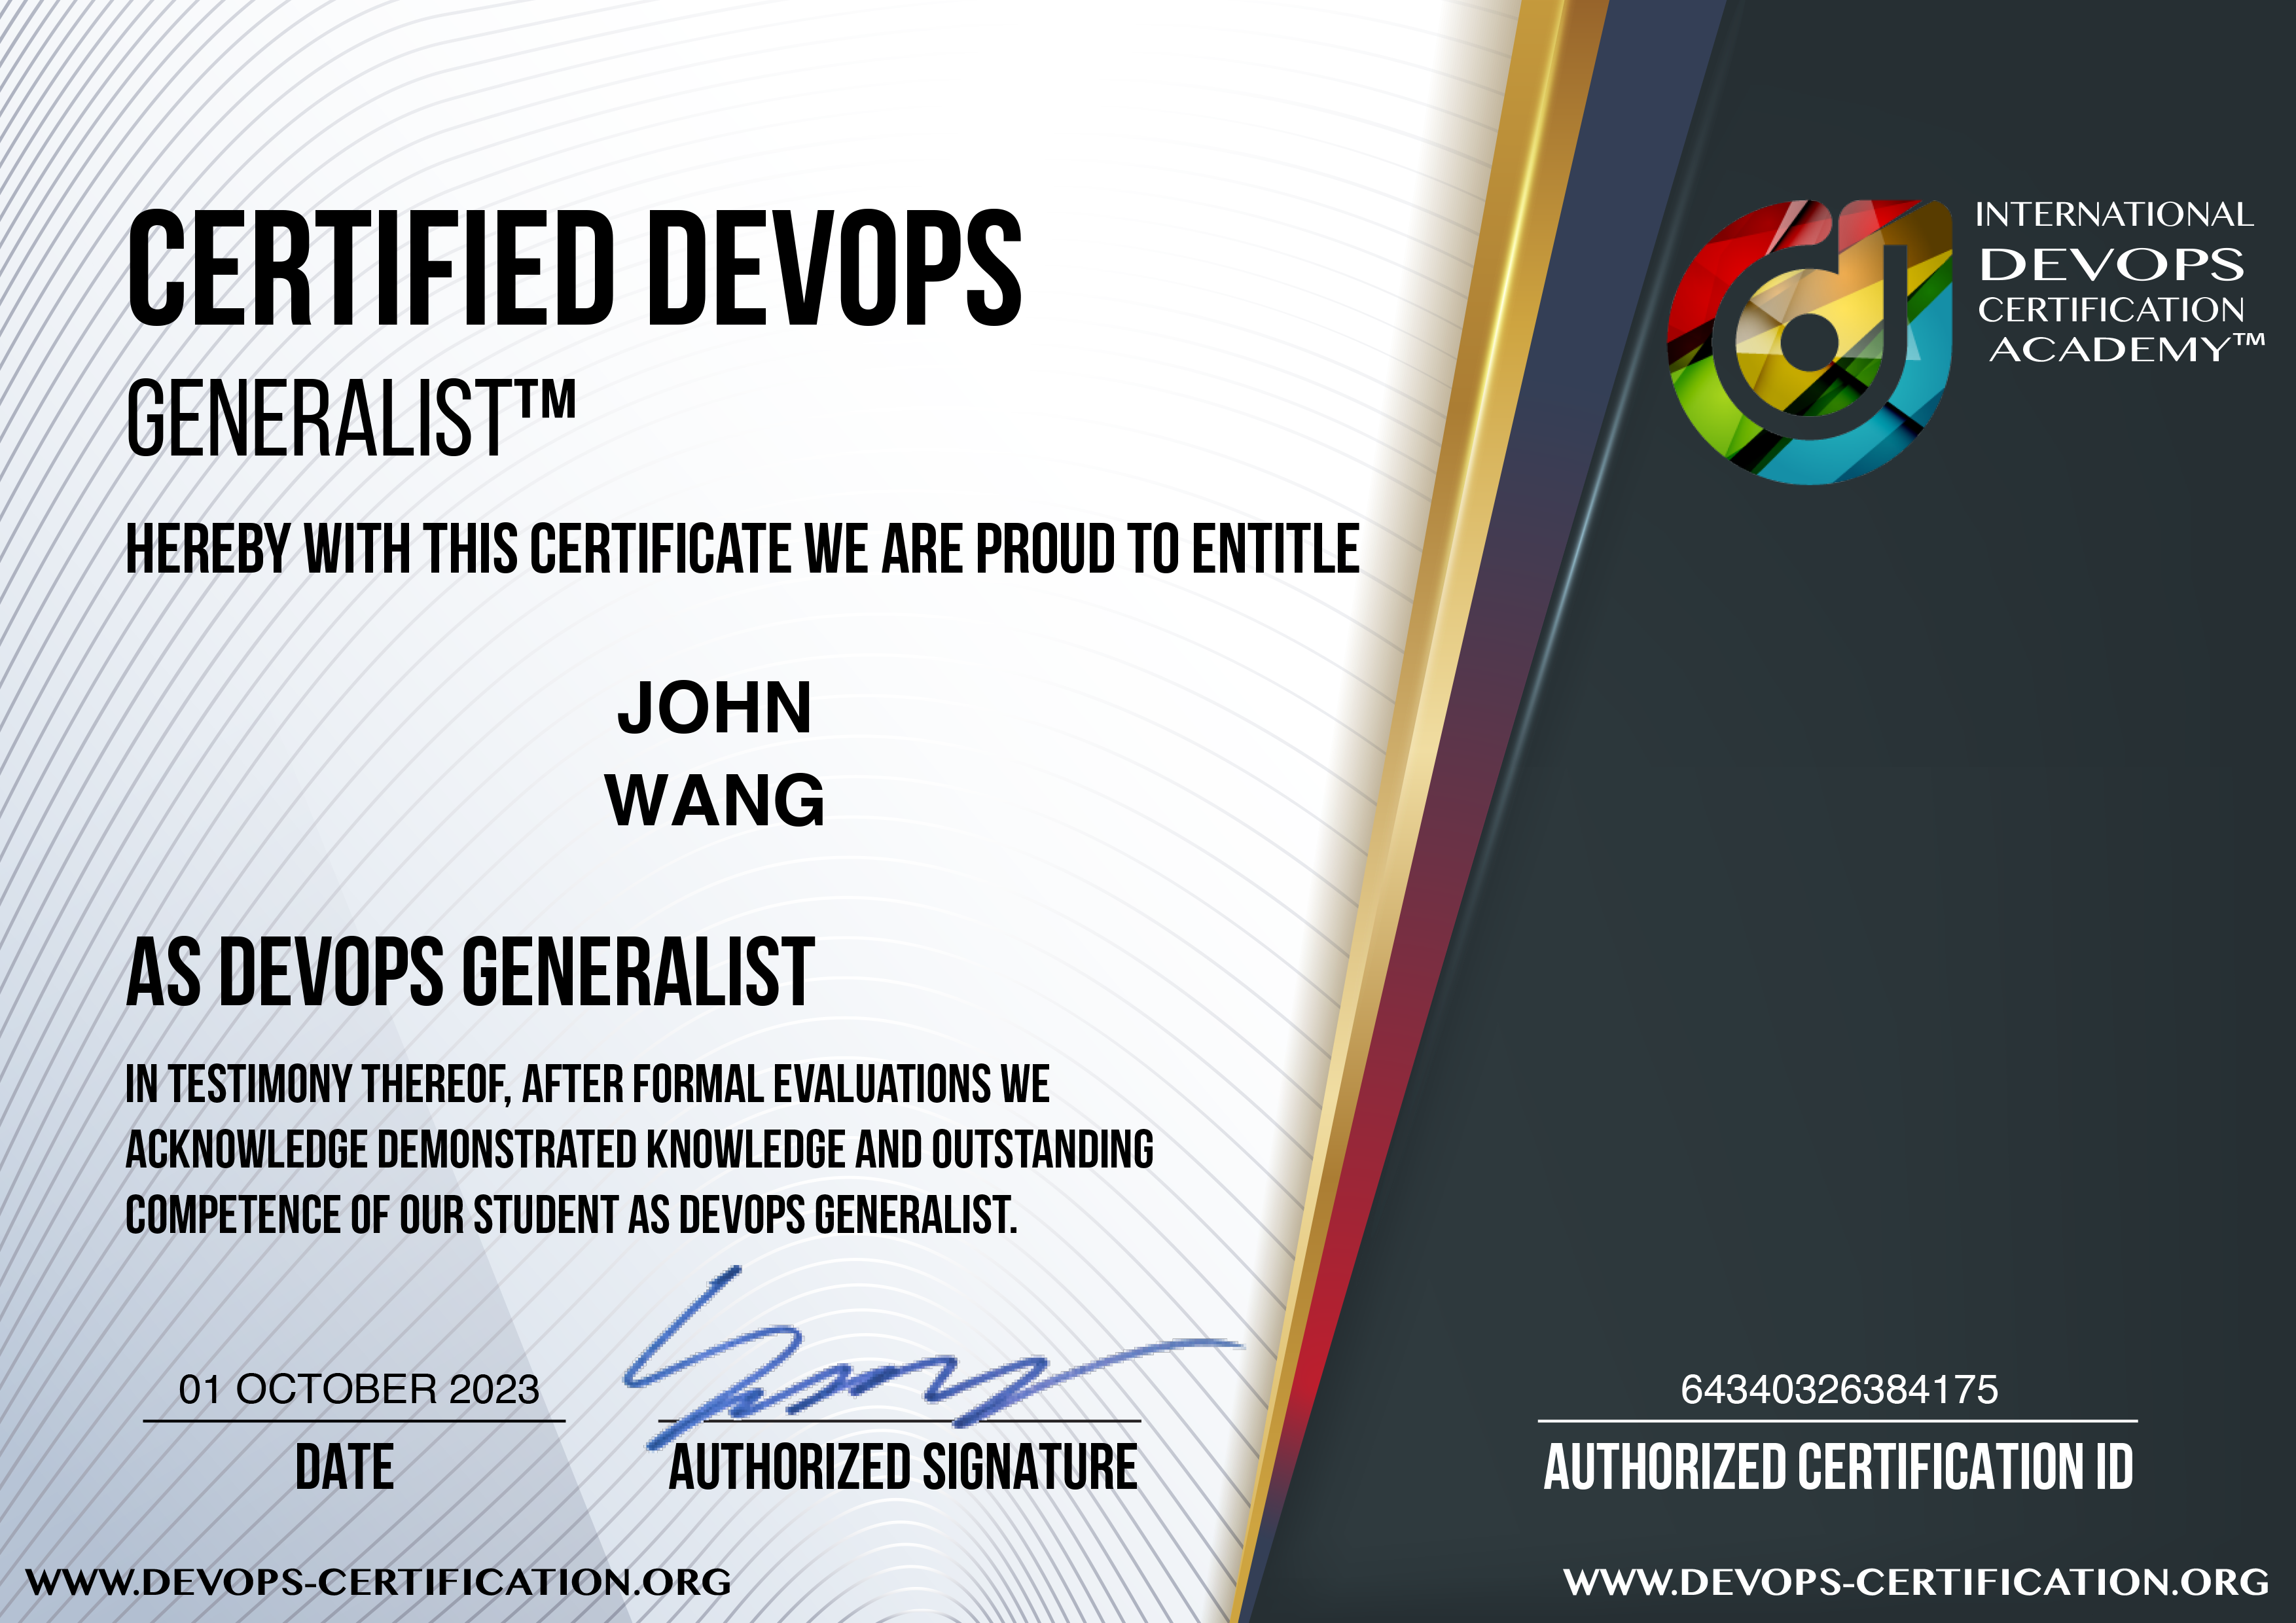 John's Certified DevOps Generalist (DevOps-GEN) from DevOps Academy